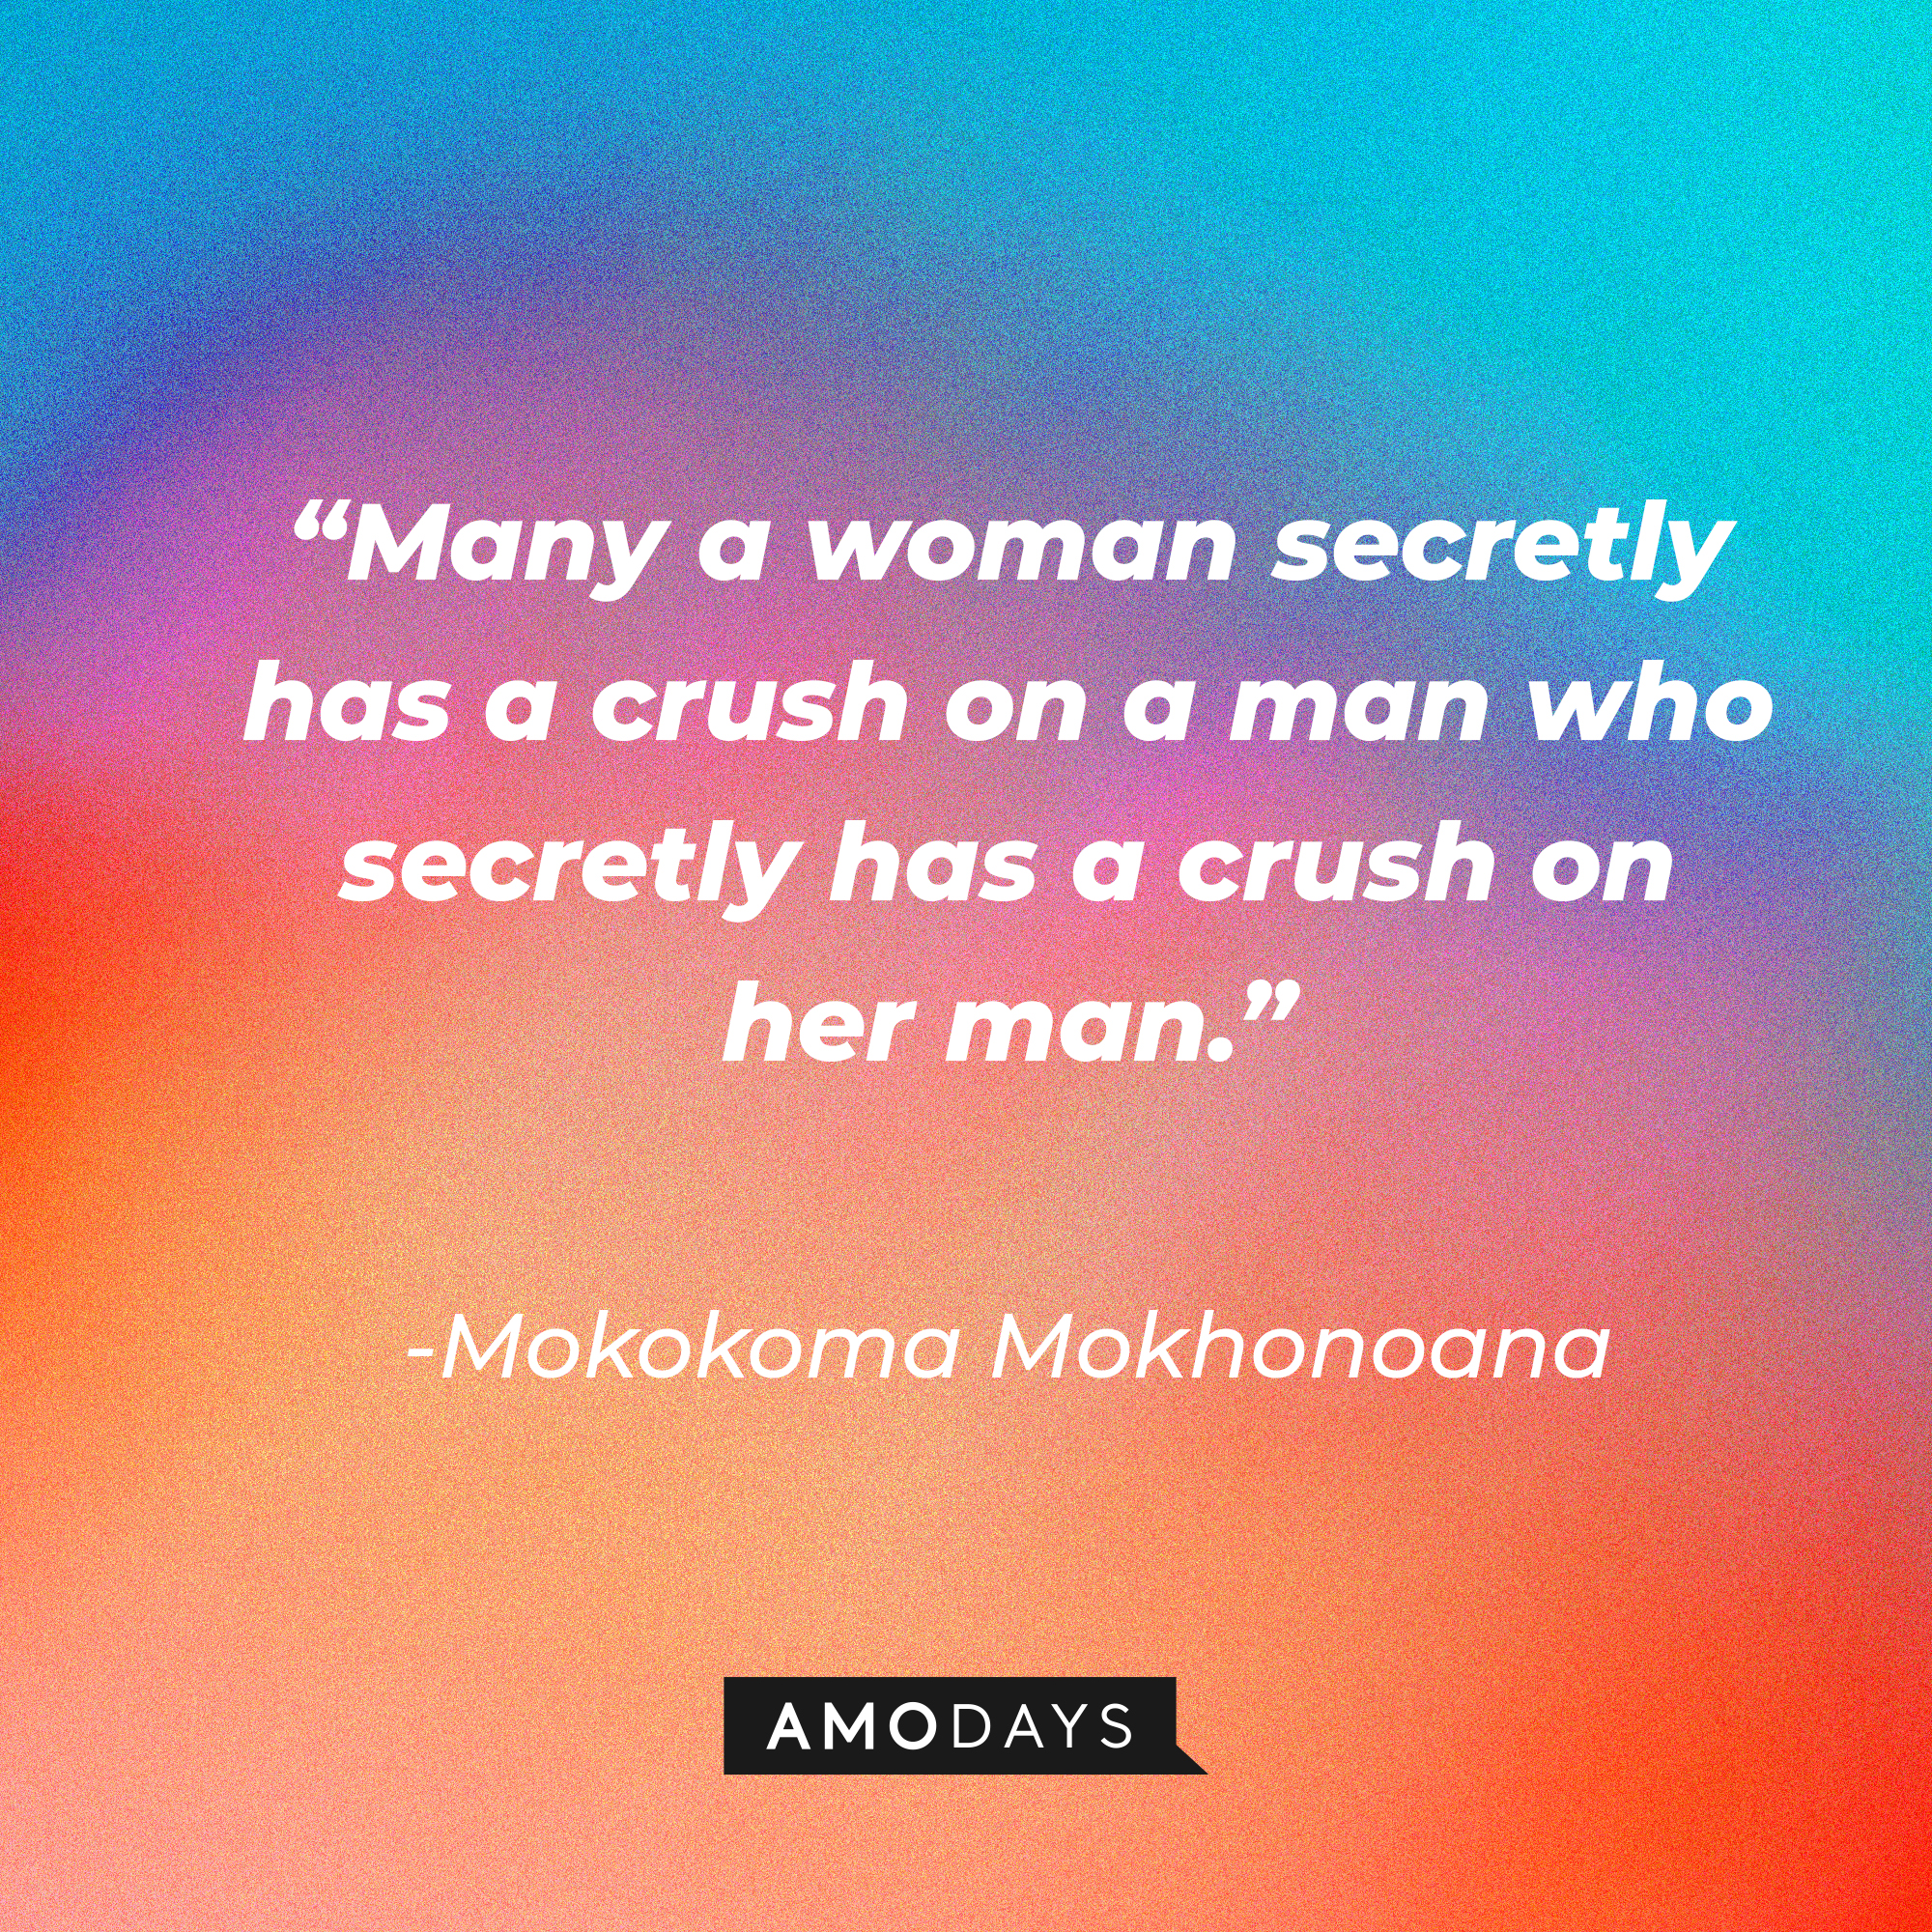 Mokokoma Mokhonoana's quote: “Many a woman secretly has a crush on a man who secretly has a crush on her man.” | Source: Amodays